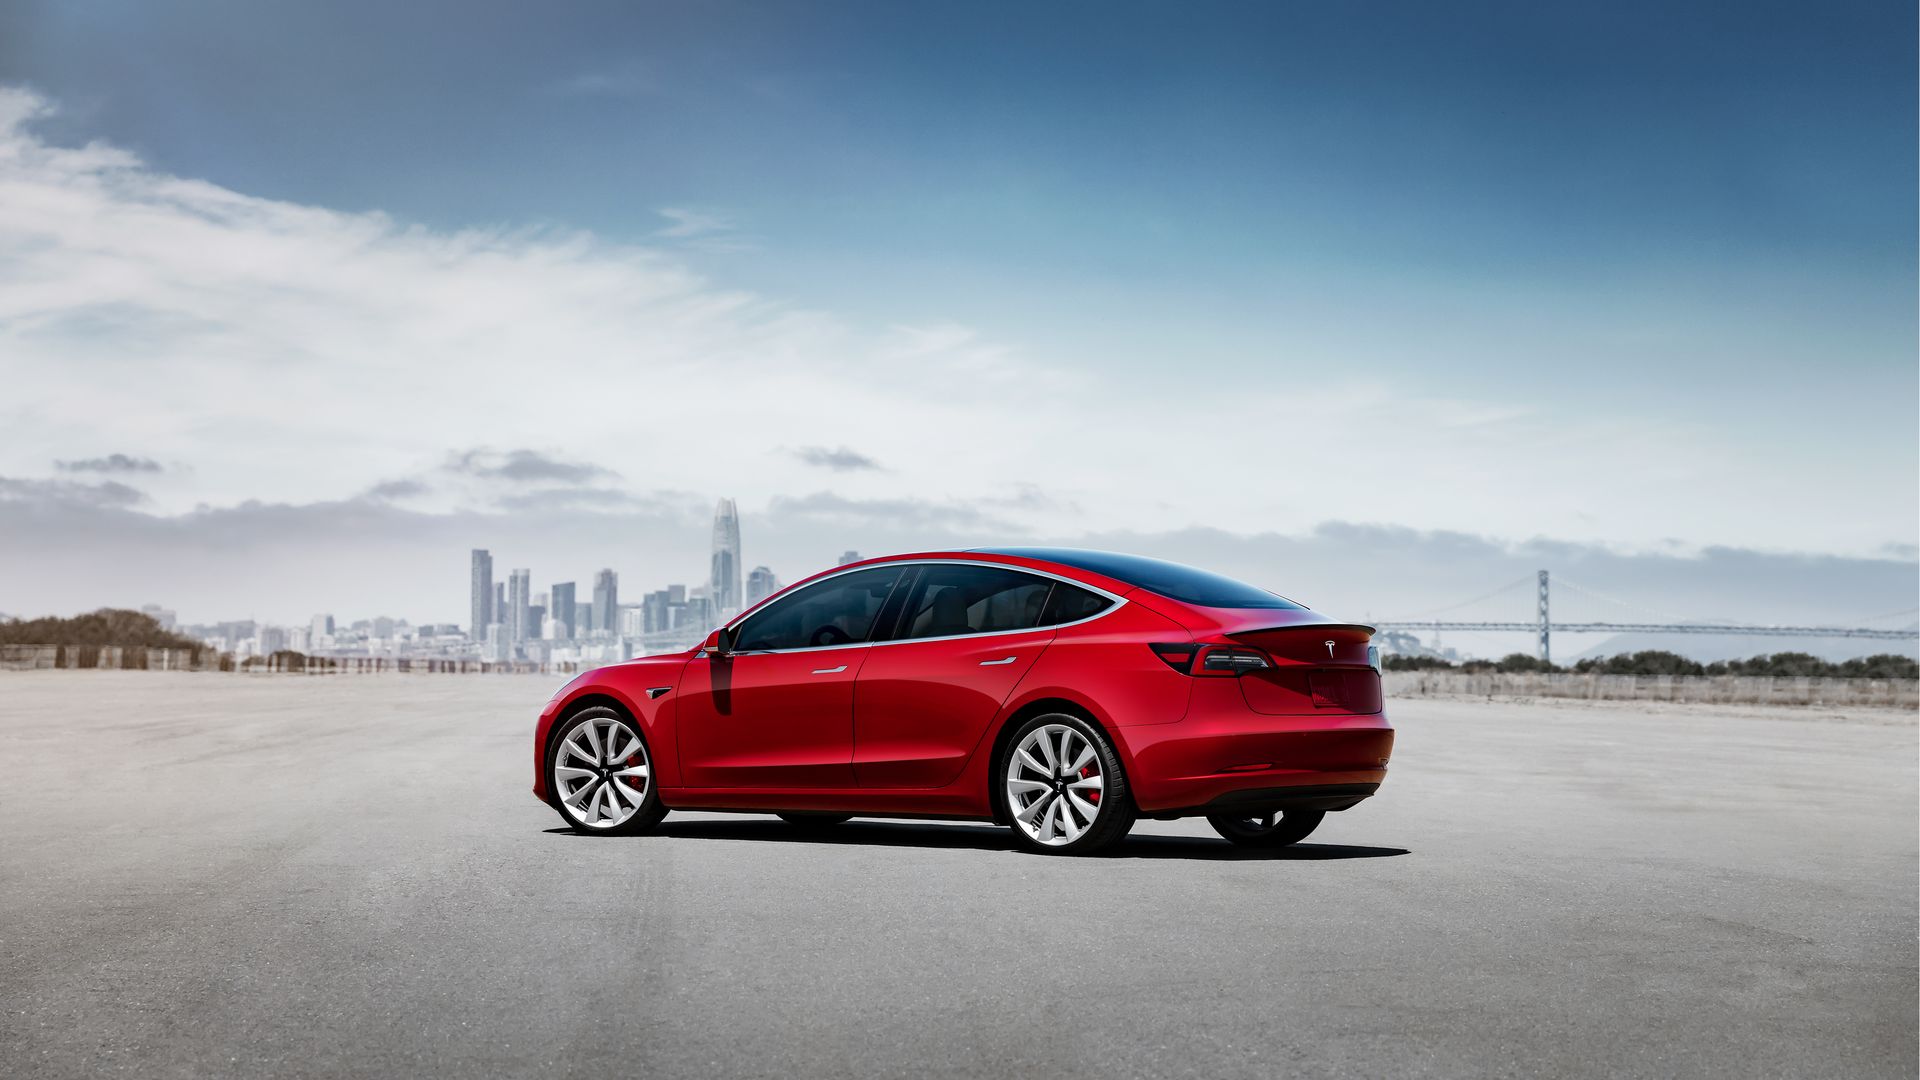 Download mobile wallpaper Car, Tesla Motors, Vehicles, Tesla Model 3 for free.